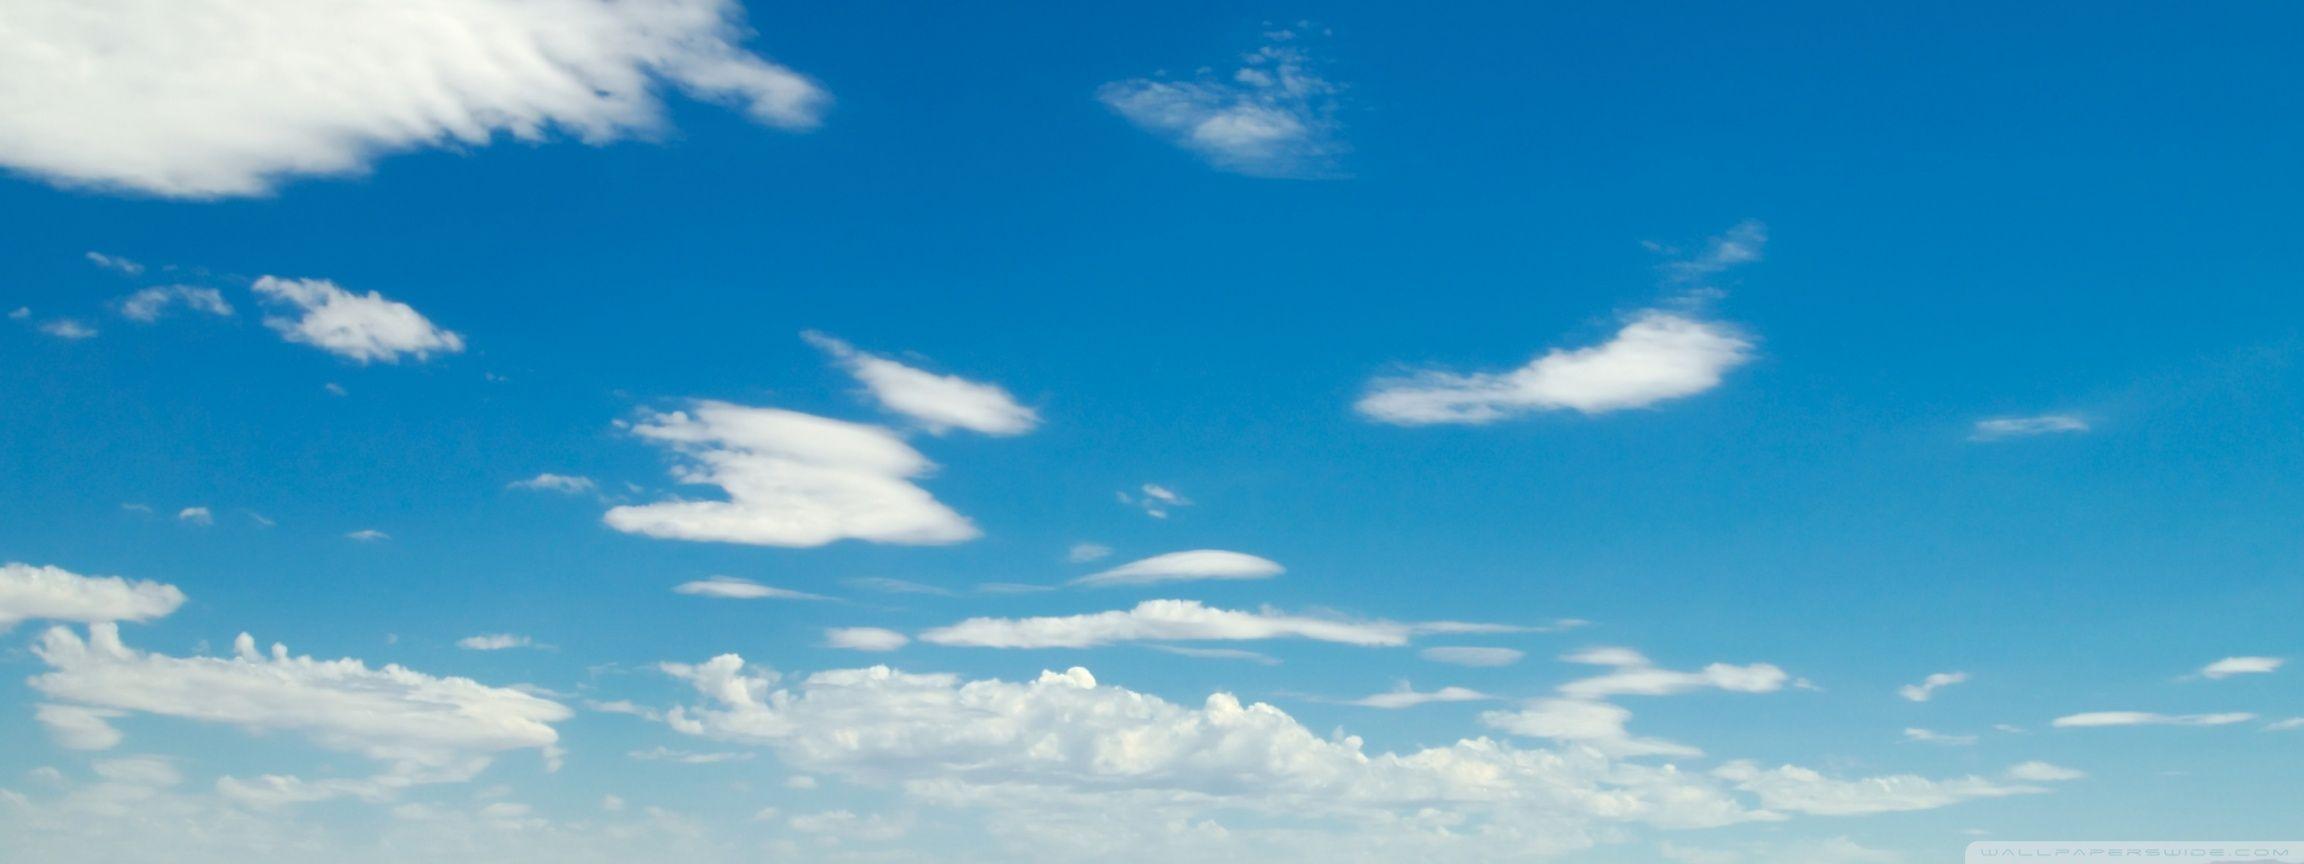 Sky Clouds HD desktop wallpaper, High Definition, Fullscreen